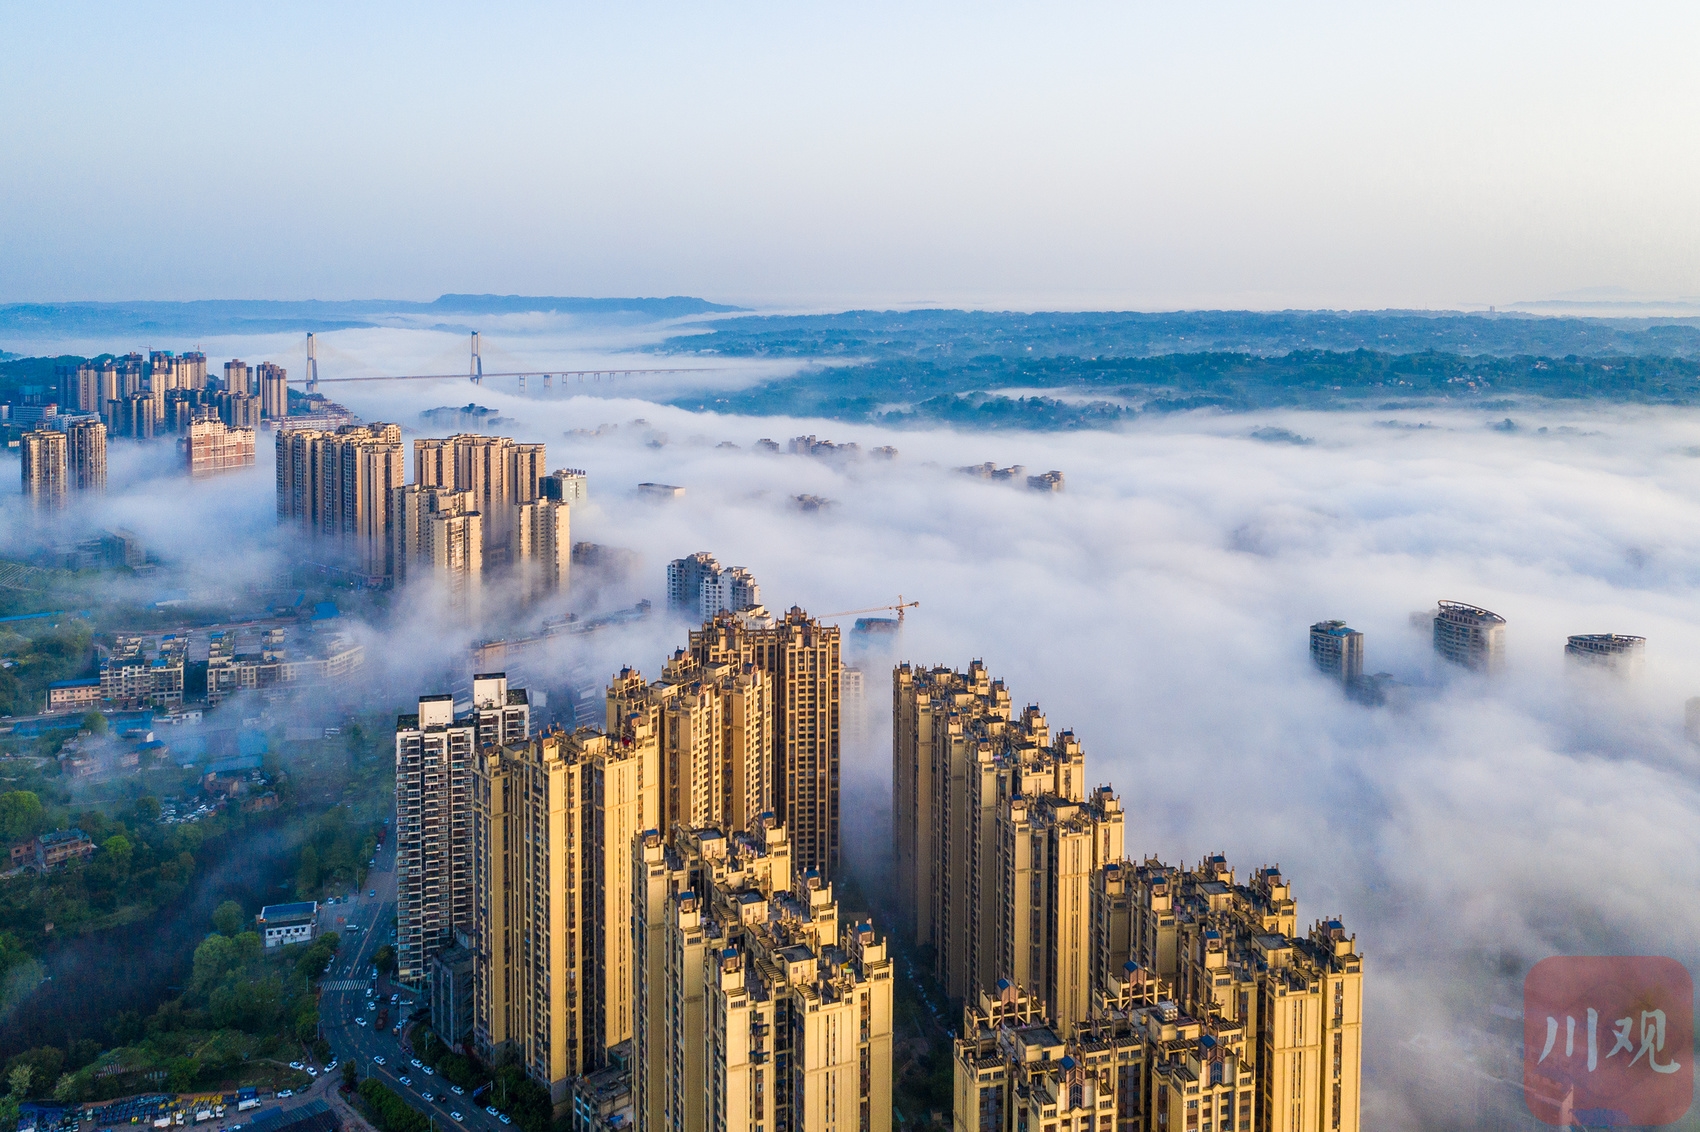 （转载）晨雾缭绕 来瞰生态城市之美